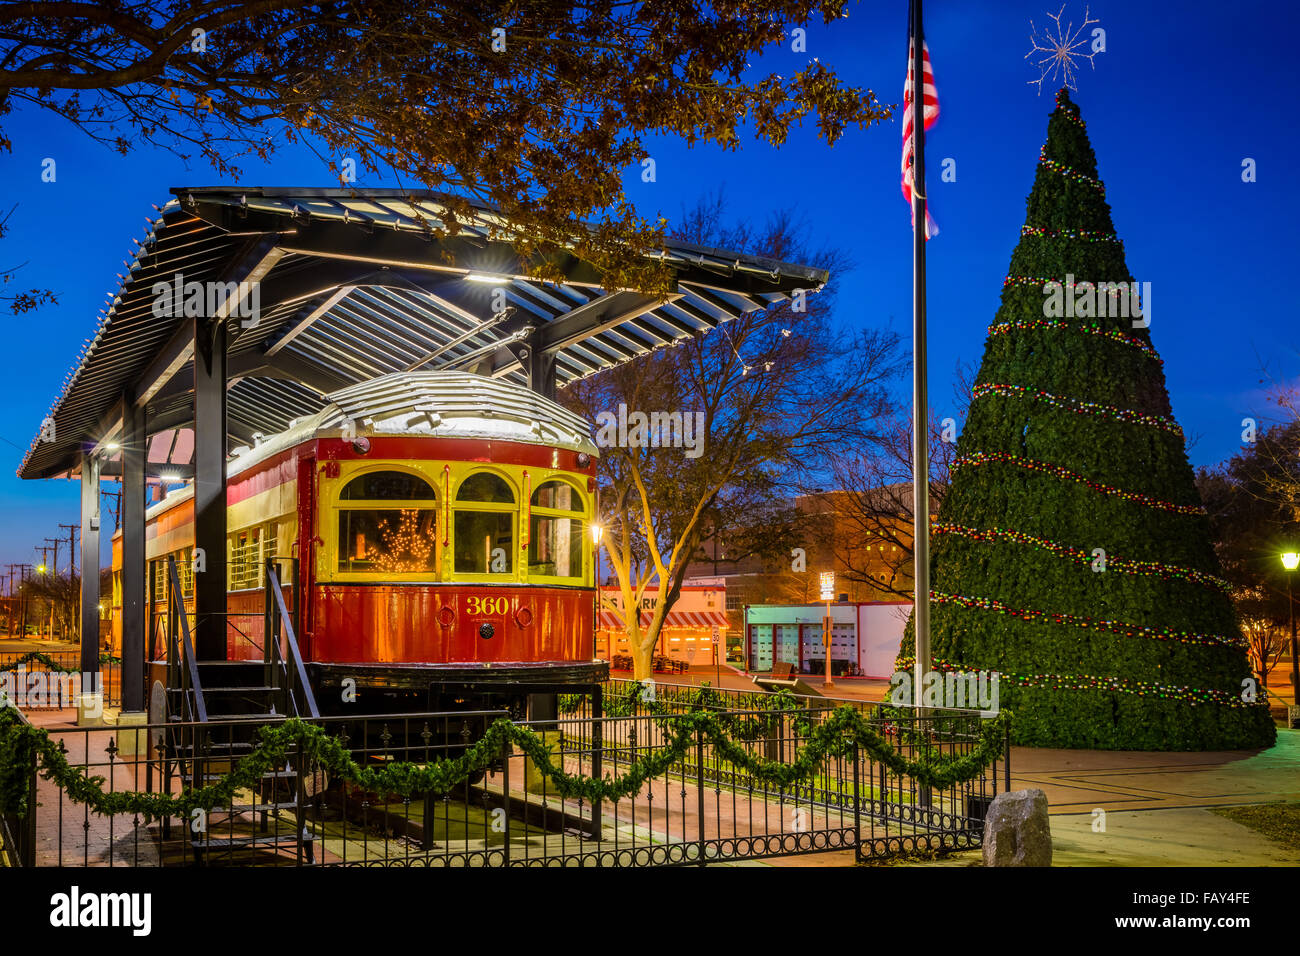 Ripristinato trolley car nel centro cittadino di Plano, Texas Foto Stock